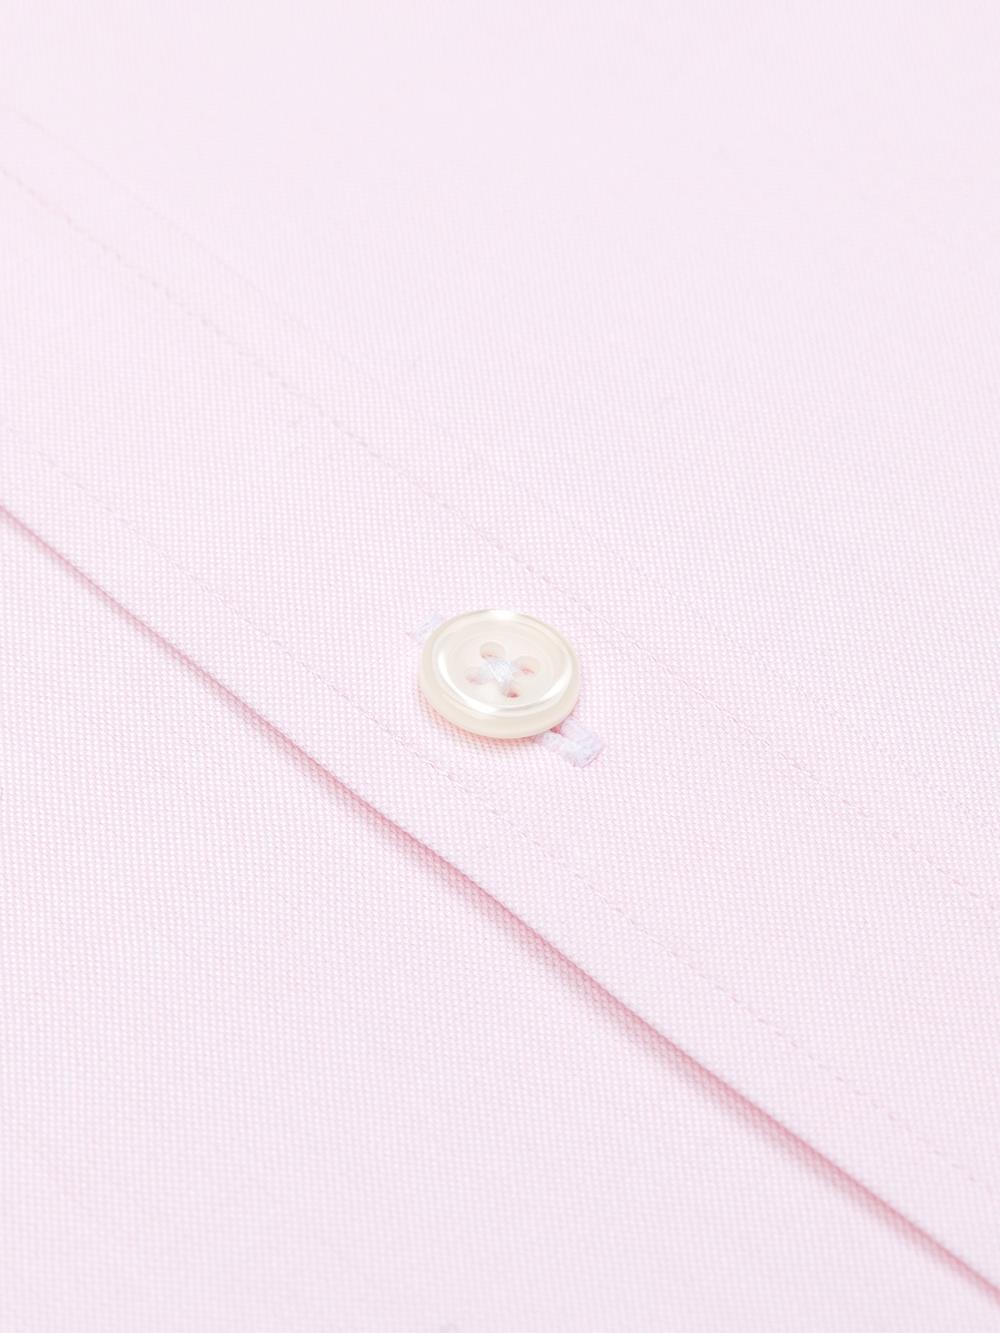 Camisa entallada pin point rosa - Manga Larga